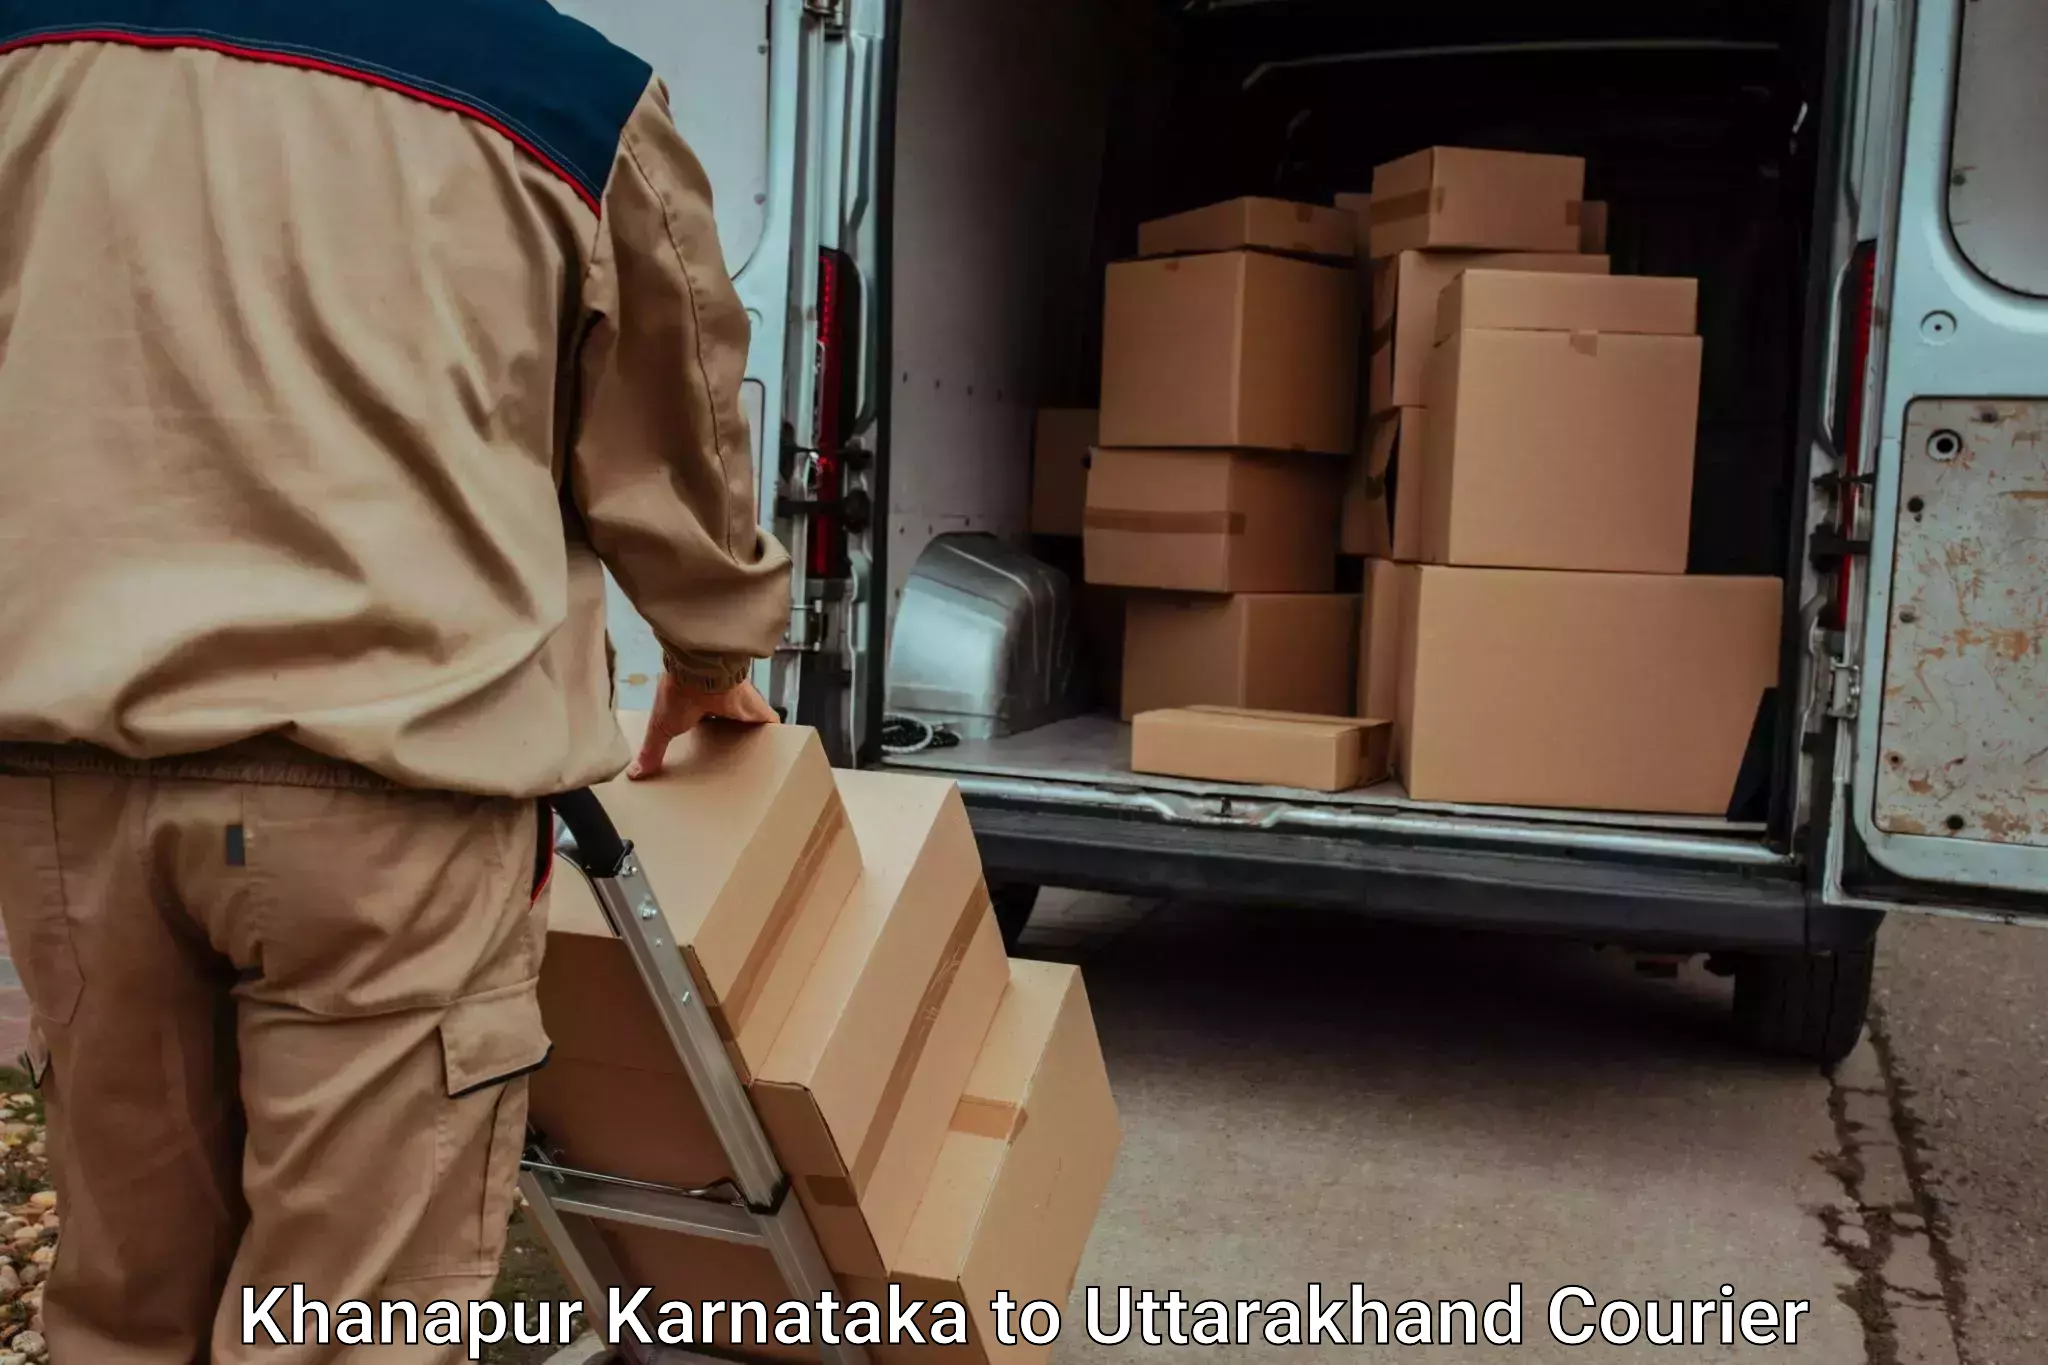 Personal effects shipping Khanapur Karnataka to Nainital